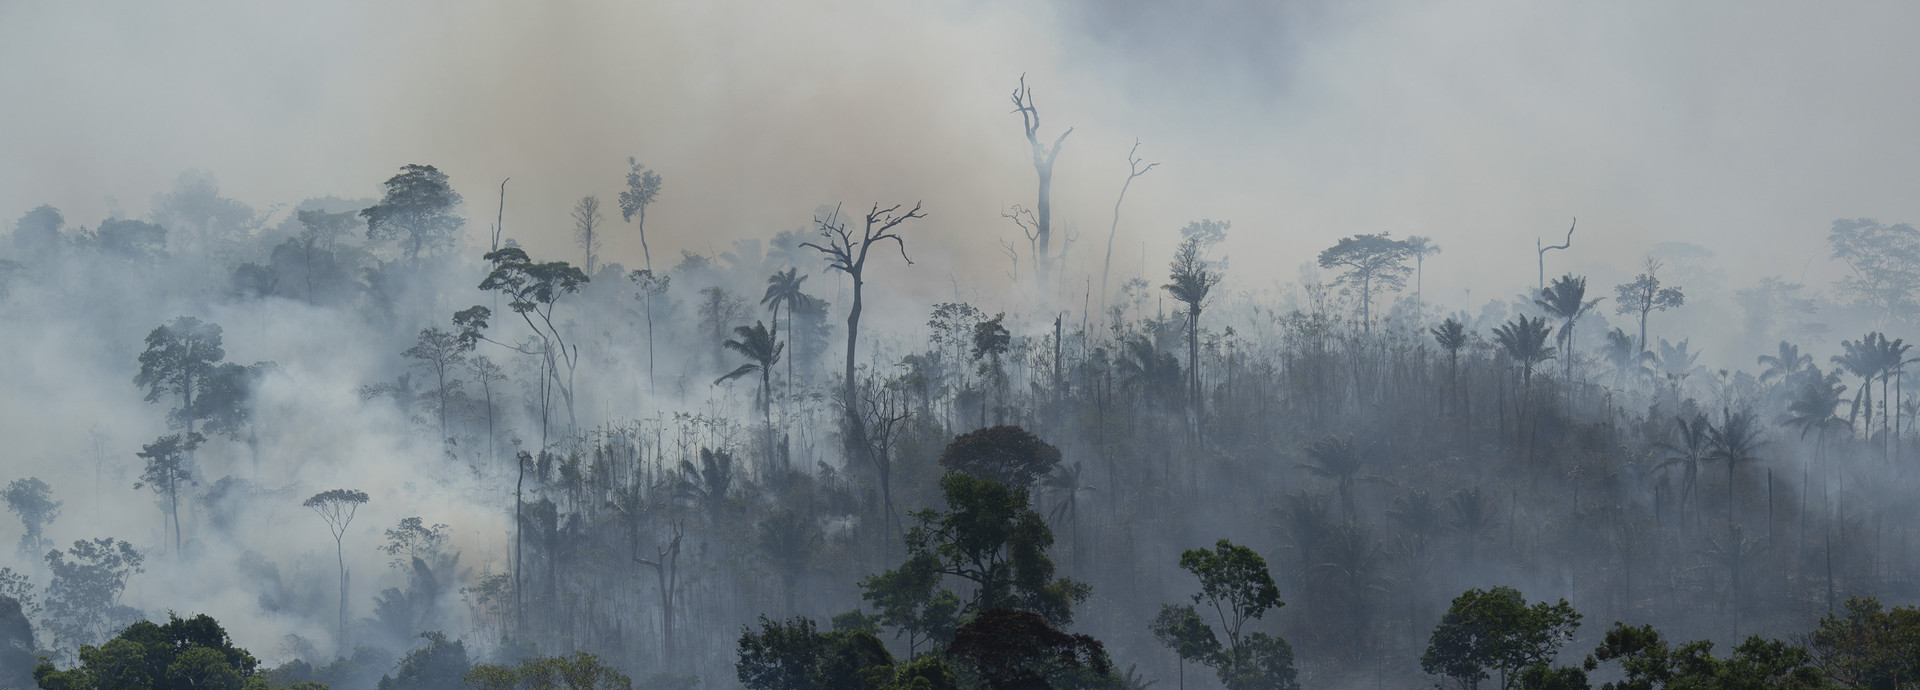 אש ביער האמזונס במחוז אלטמירה בברזיל (צילום: ap)